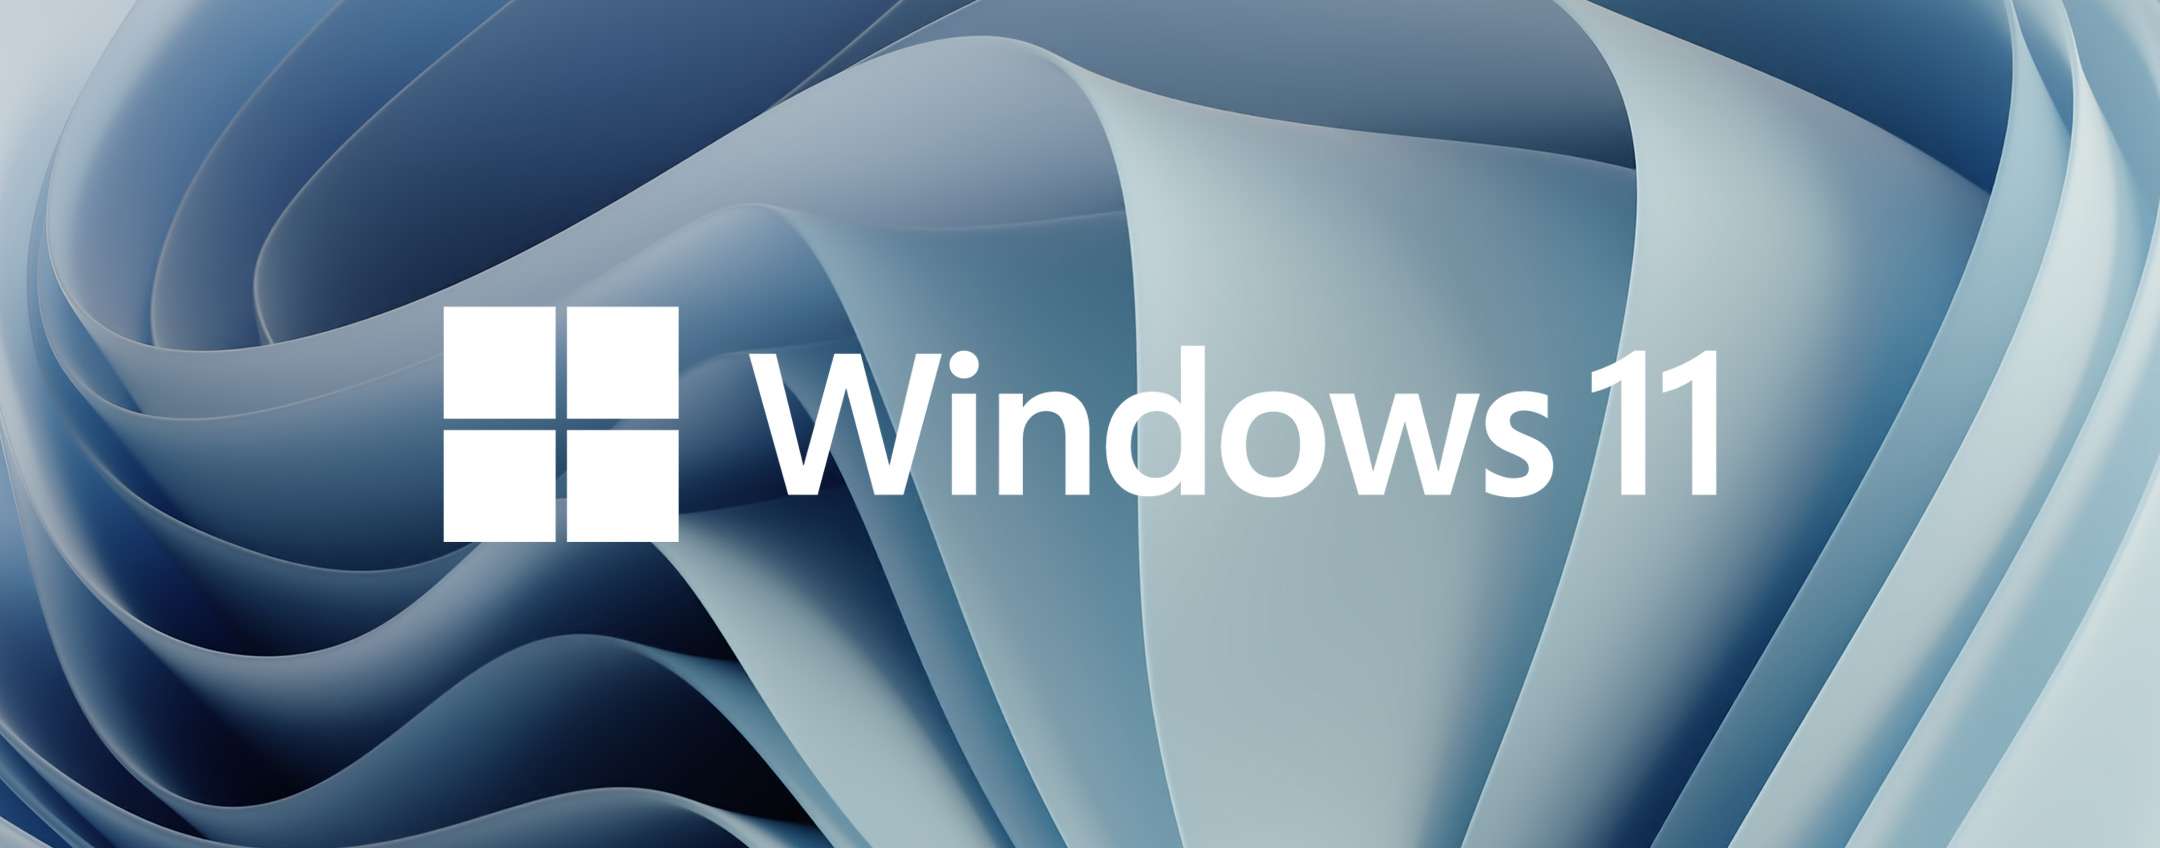 Windows 11 migliora la protezione dai ransomware